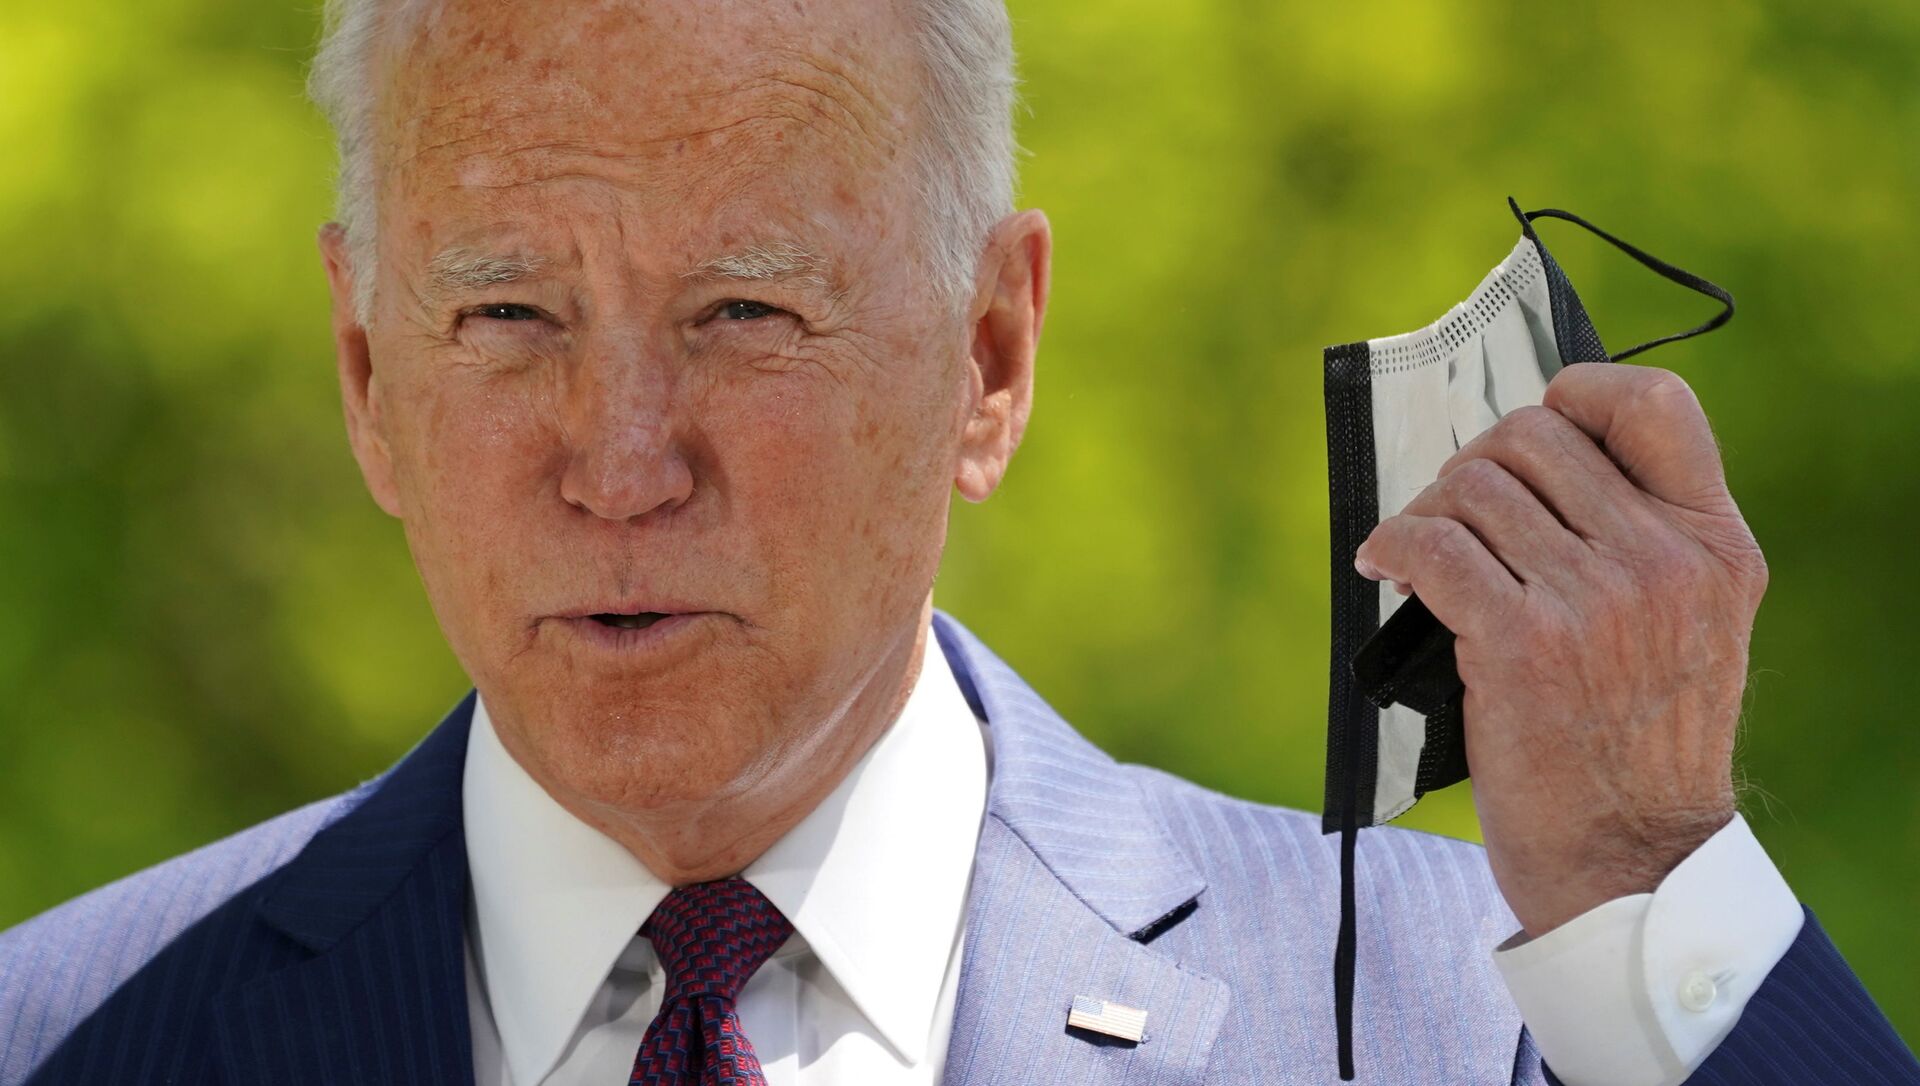 Em Washington, o presidente dos Estados Unidos, Joe Biden, tira a máscara de proteção contra a COVID-19 antes de falar sobre o trabalho de sua administração na pandemia, em 27 de abril de 2021 - Sputnik Brasil, 1920, 13.05.2021